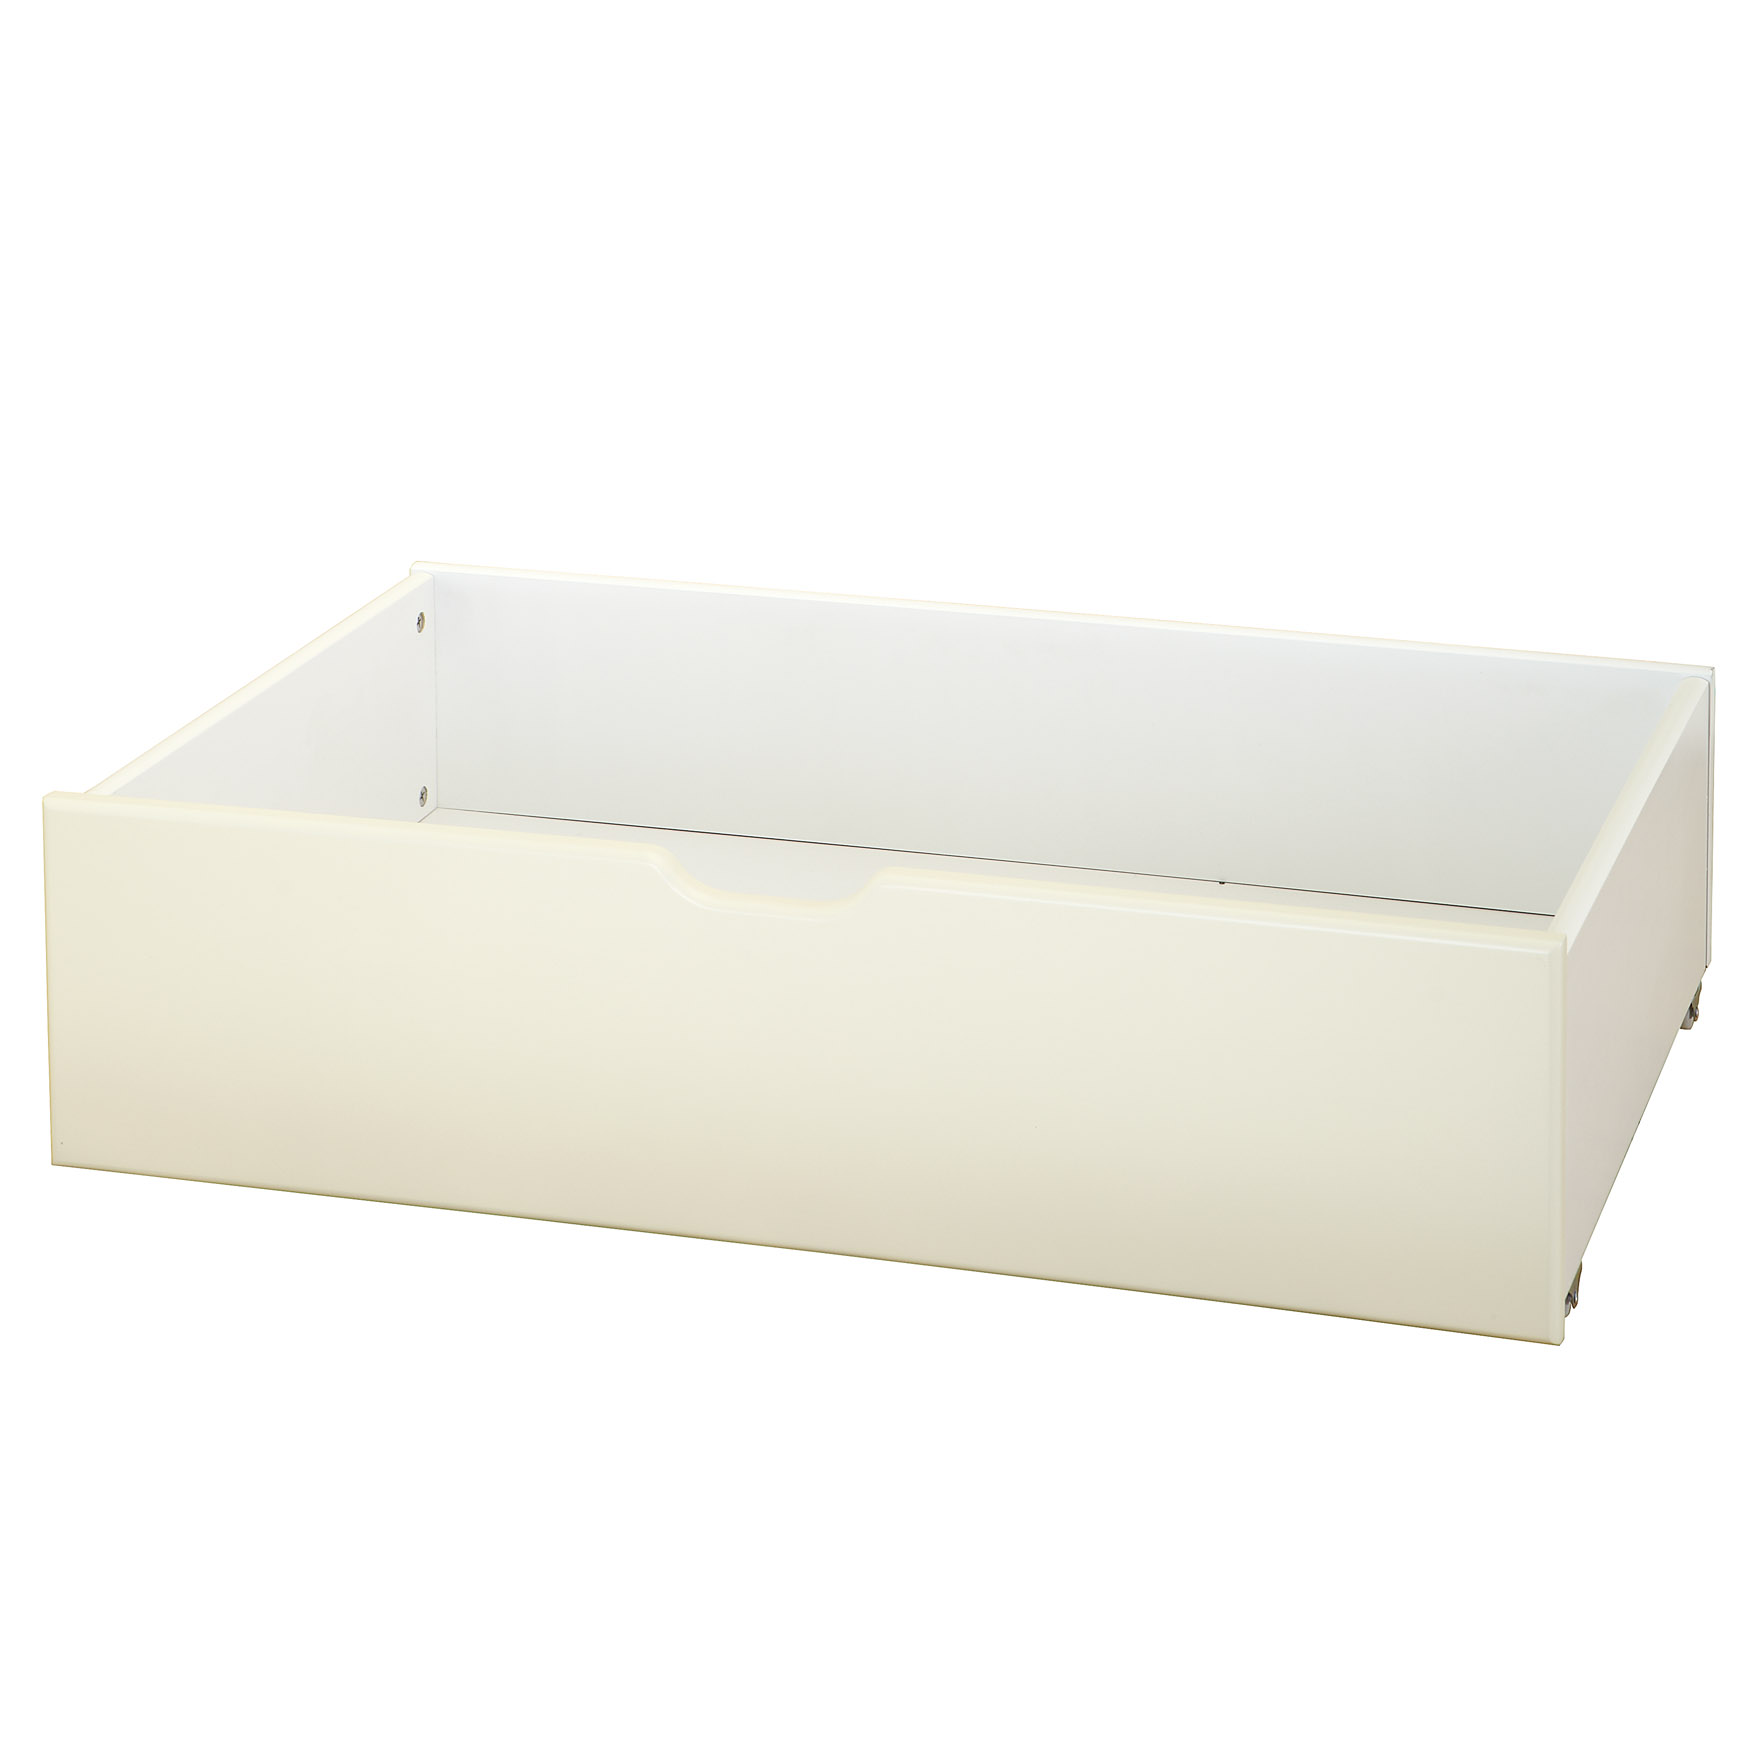 Children's Underbed Storage Drawers - Antique White (set of 2)